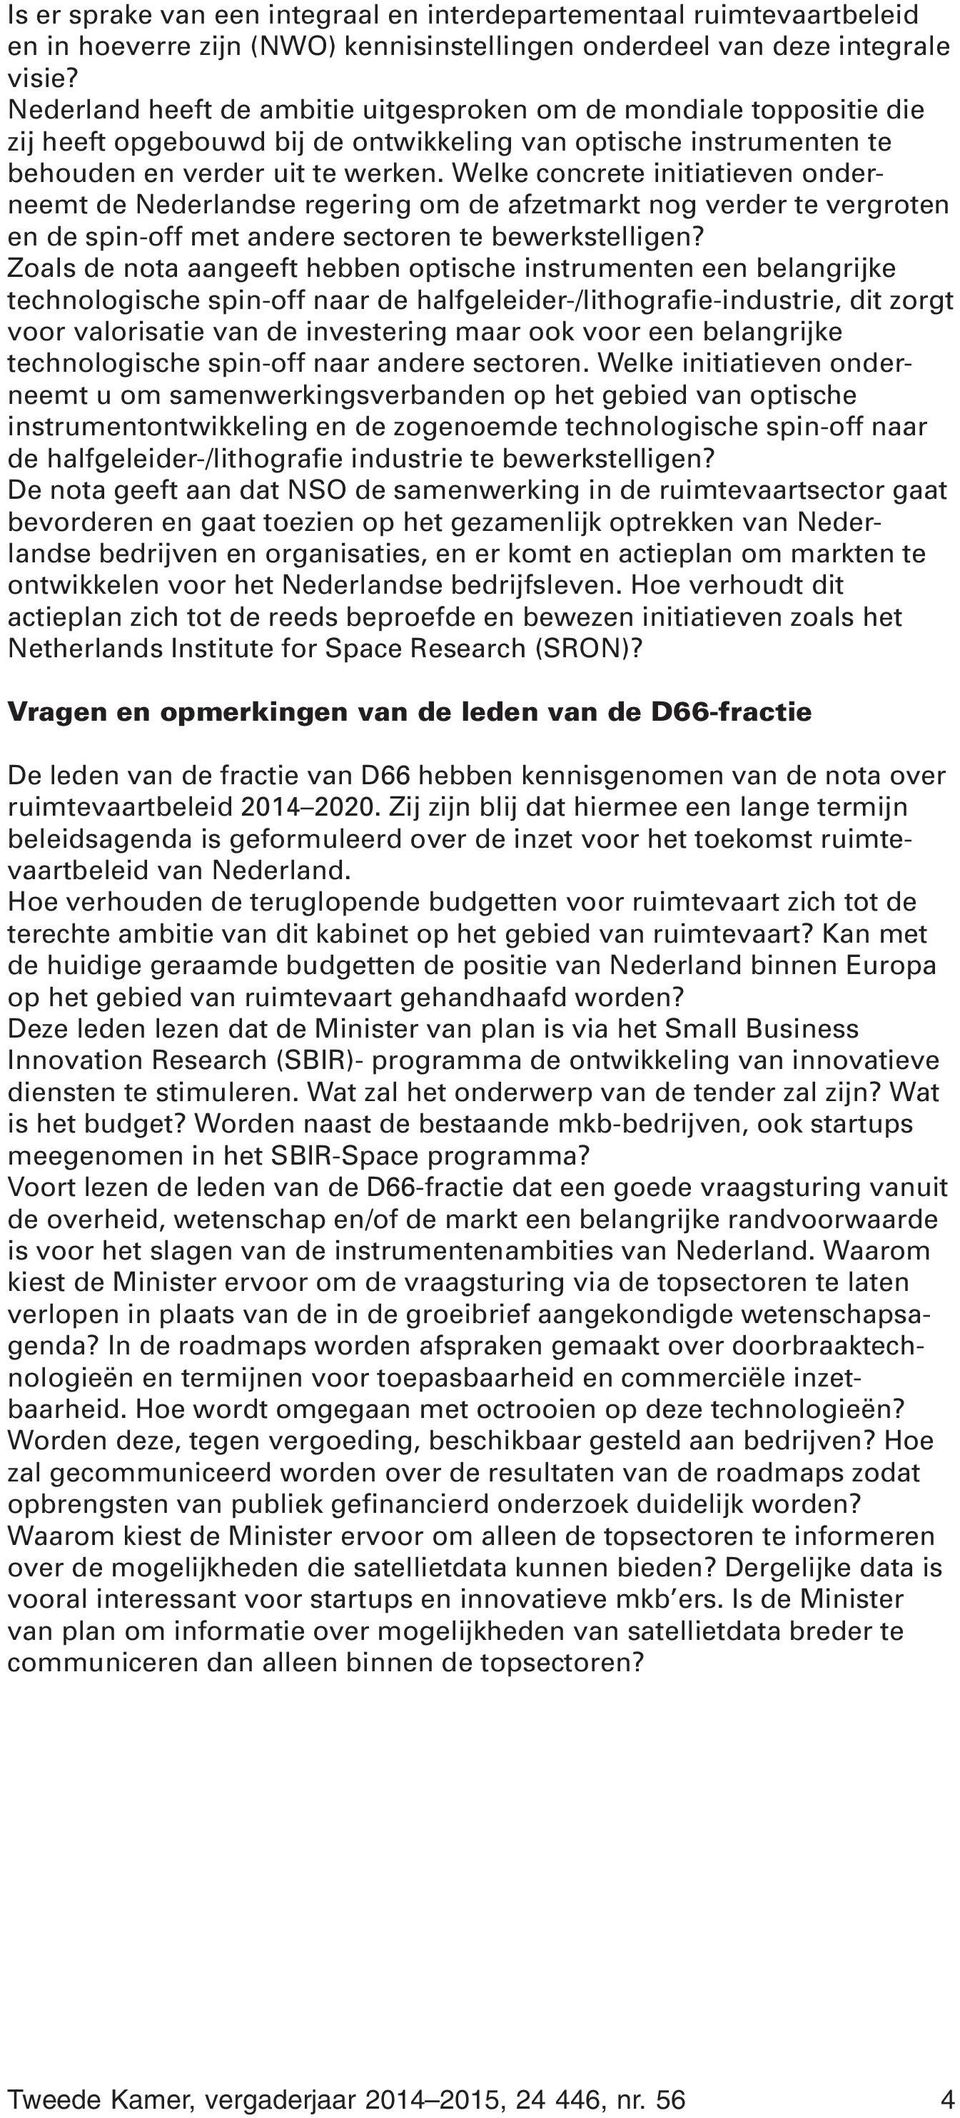 Welke concrete initiatieven onderneemt de Nederlandse regering om de afzetmarkt nog verder te vergroten en de spin-off met andere sectoren te bewerkstelligen?